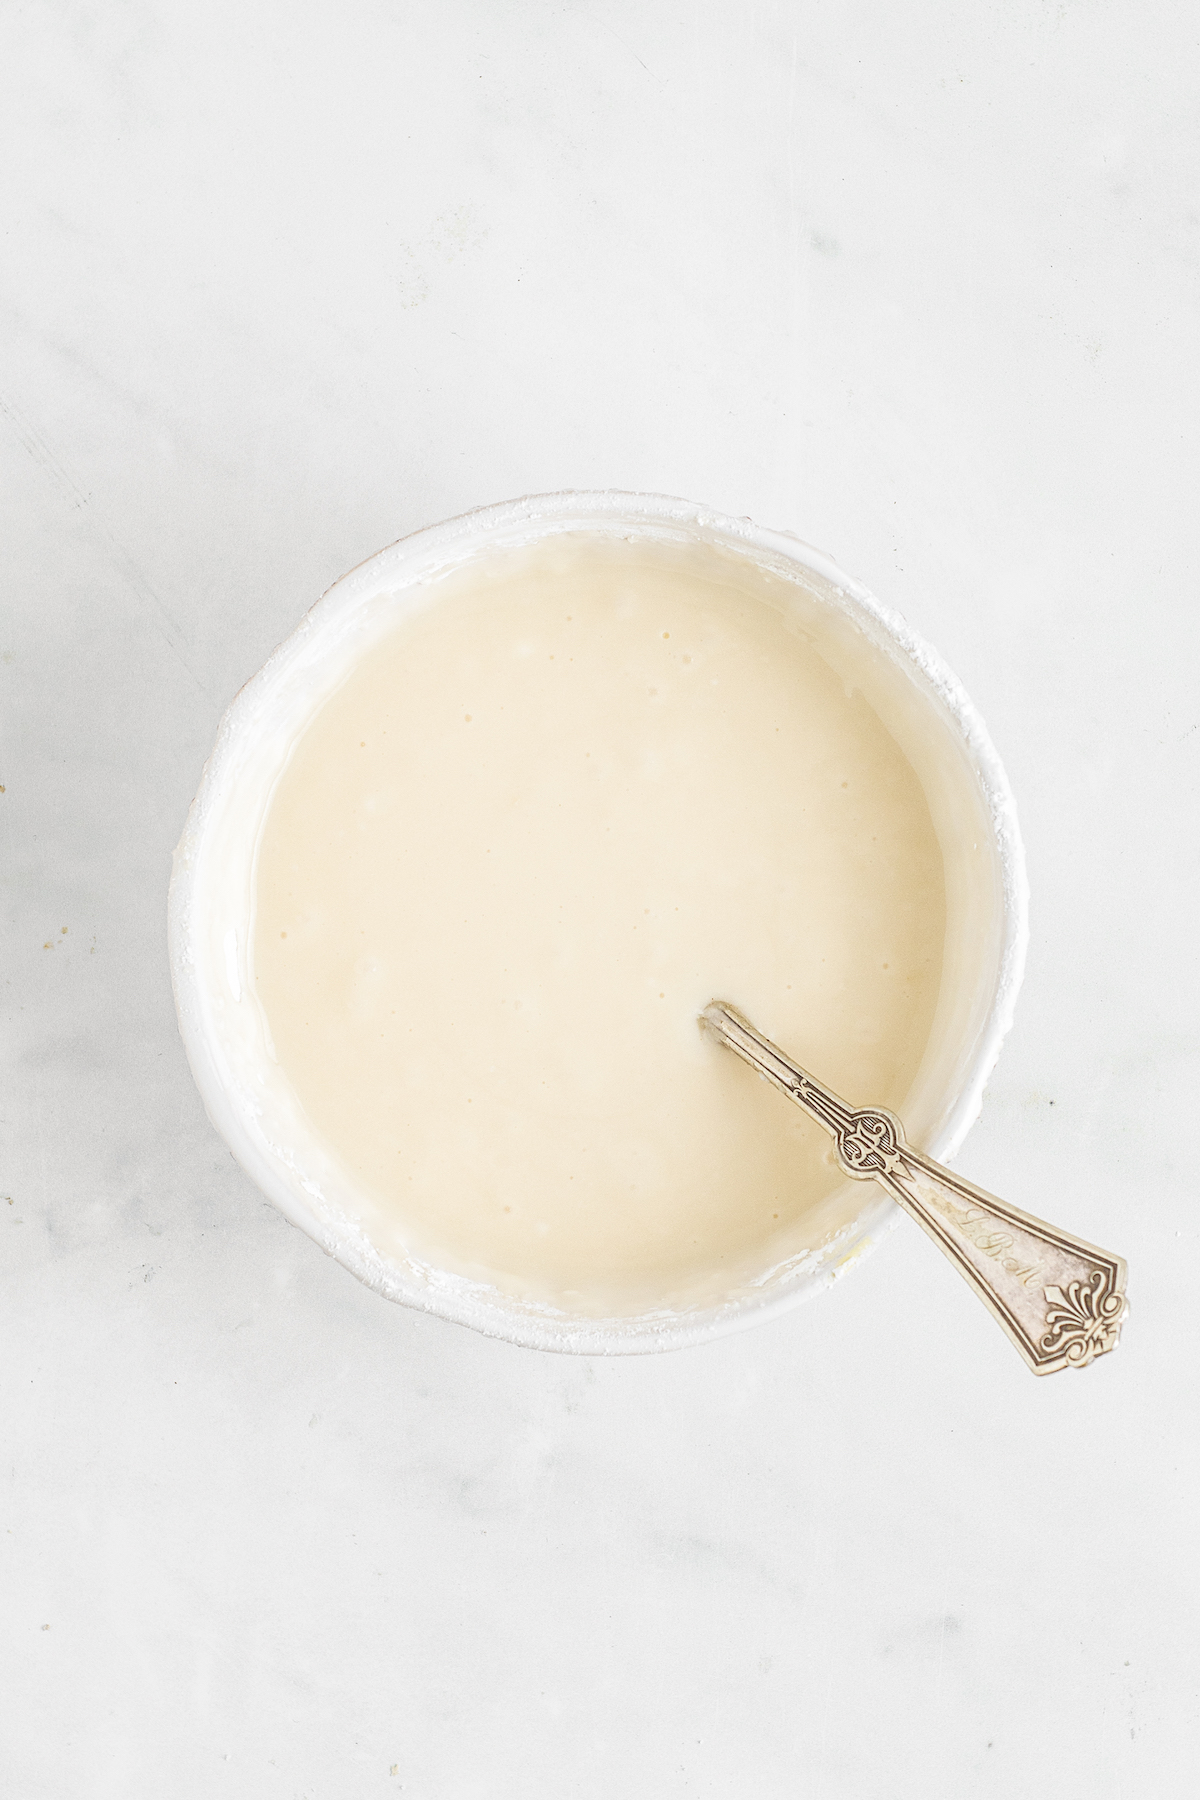 Creamy glaze in a bowl.